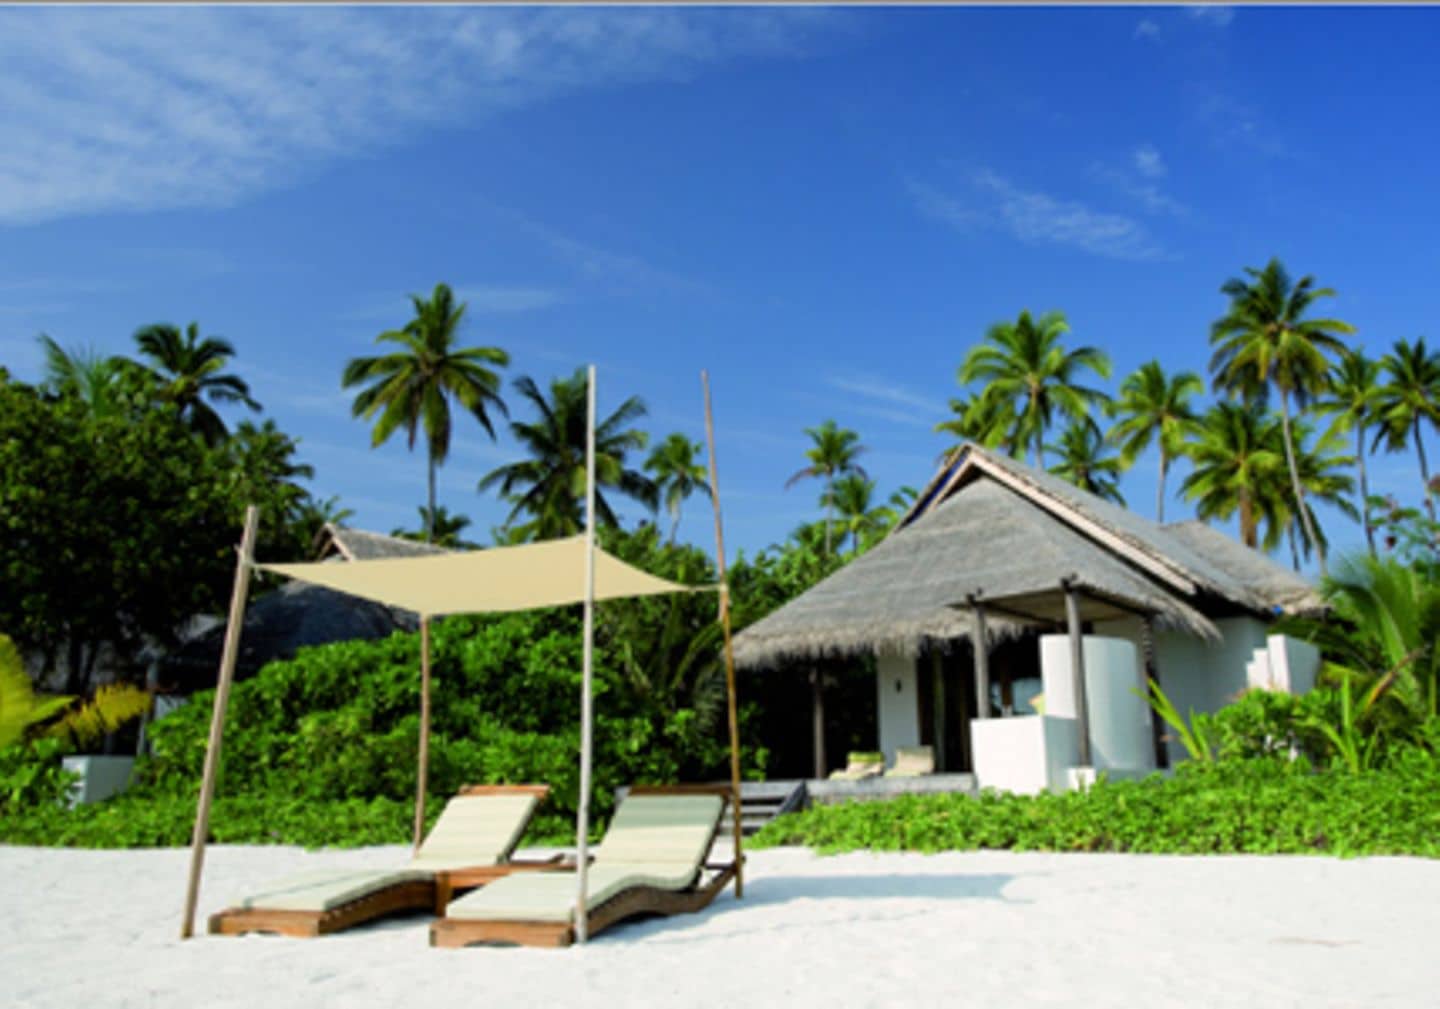 Coco Palm Malediven